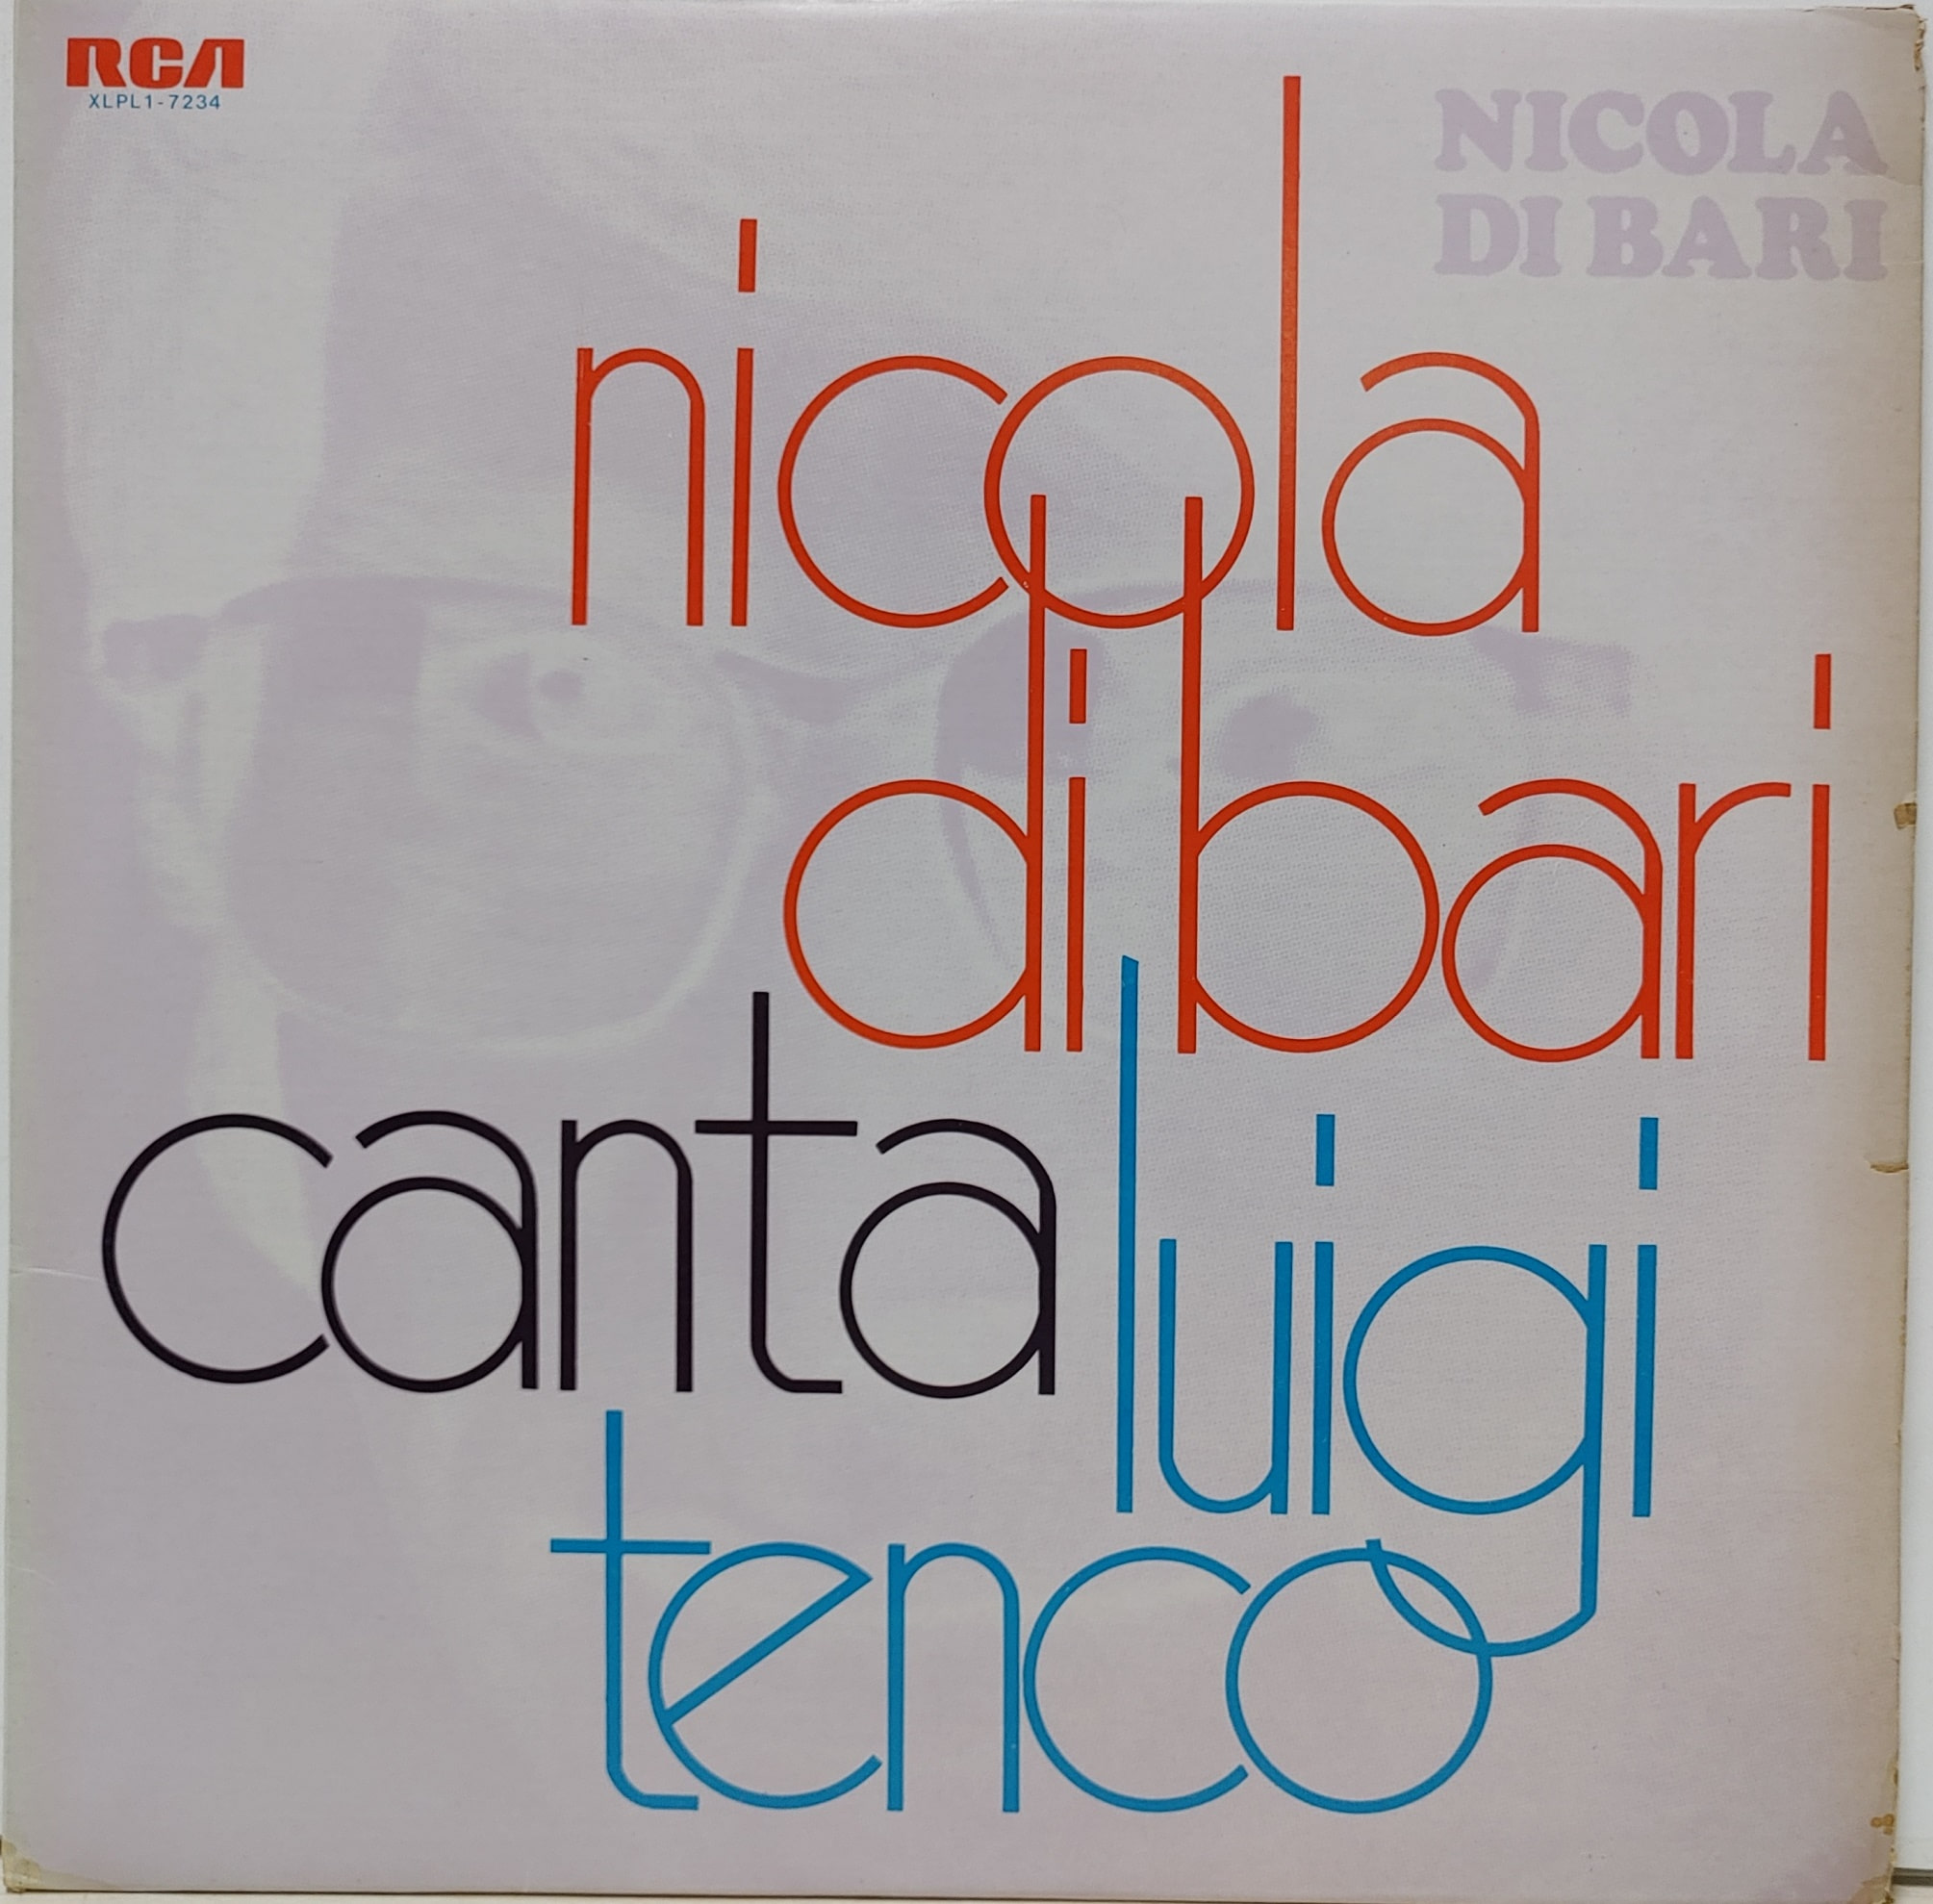 NICOLA DI BARI / CANTA LUIGI TENCO